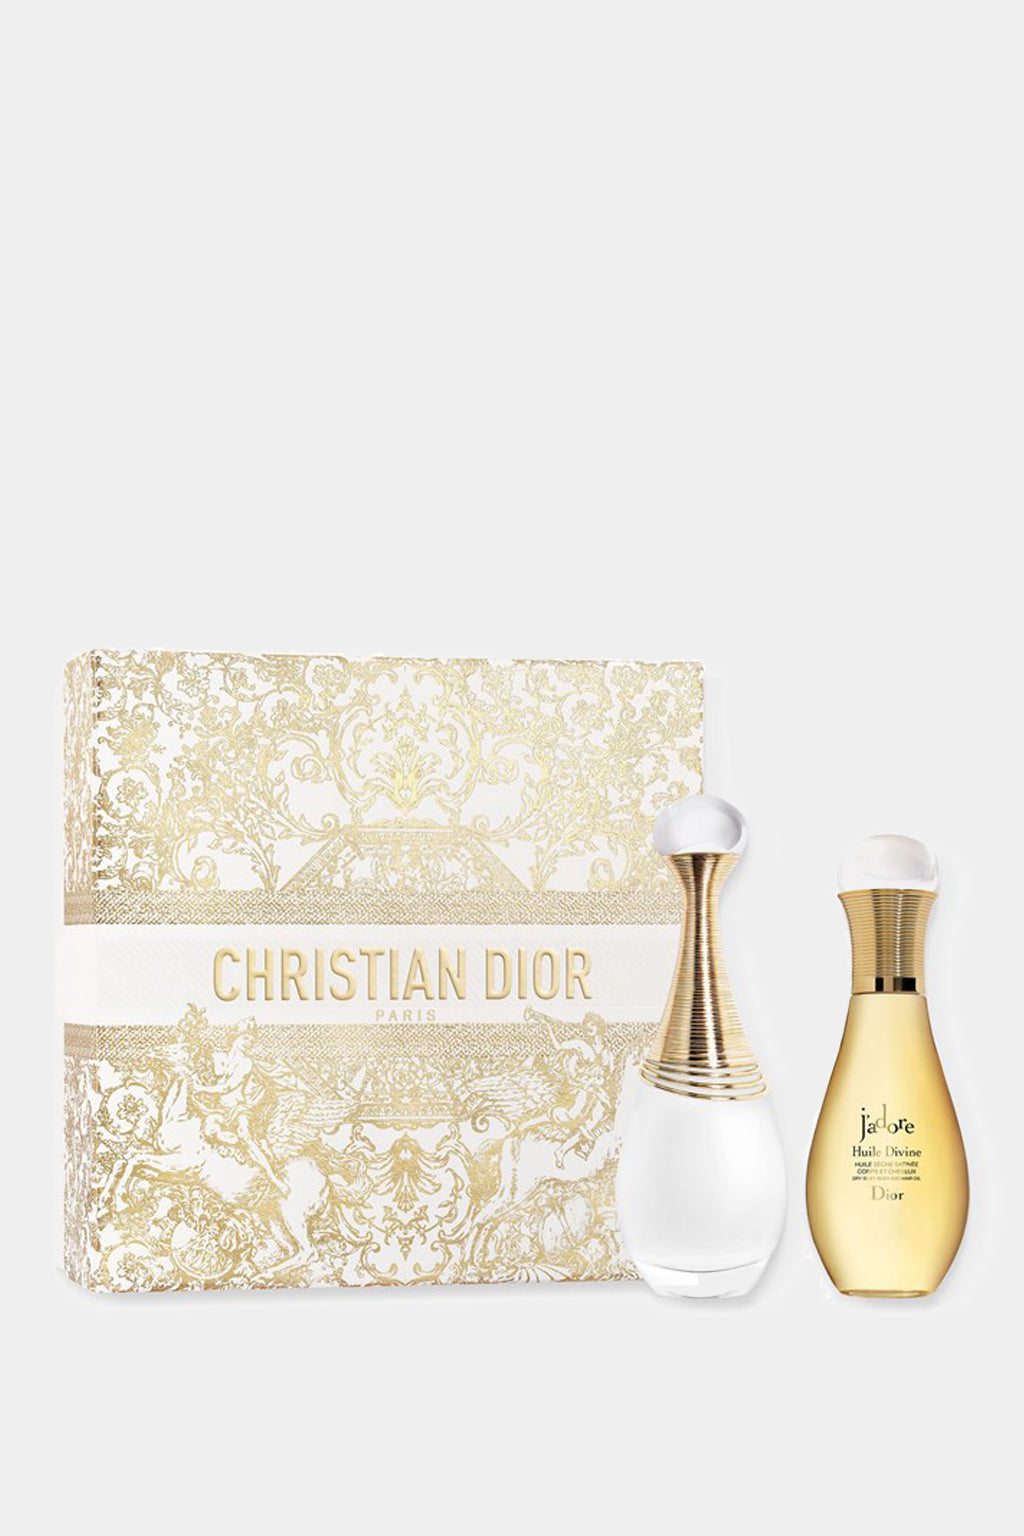 Dior  - J’adore Parfum D’eau Set - Limited Edition Set